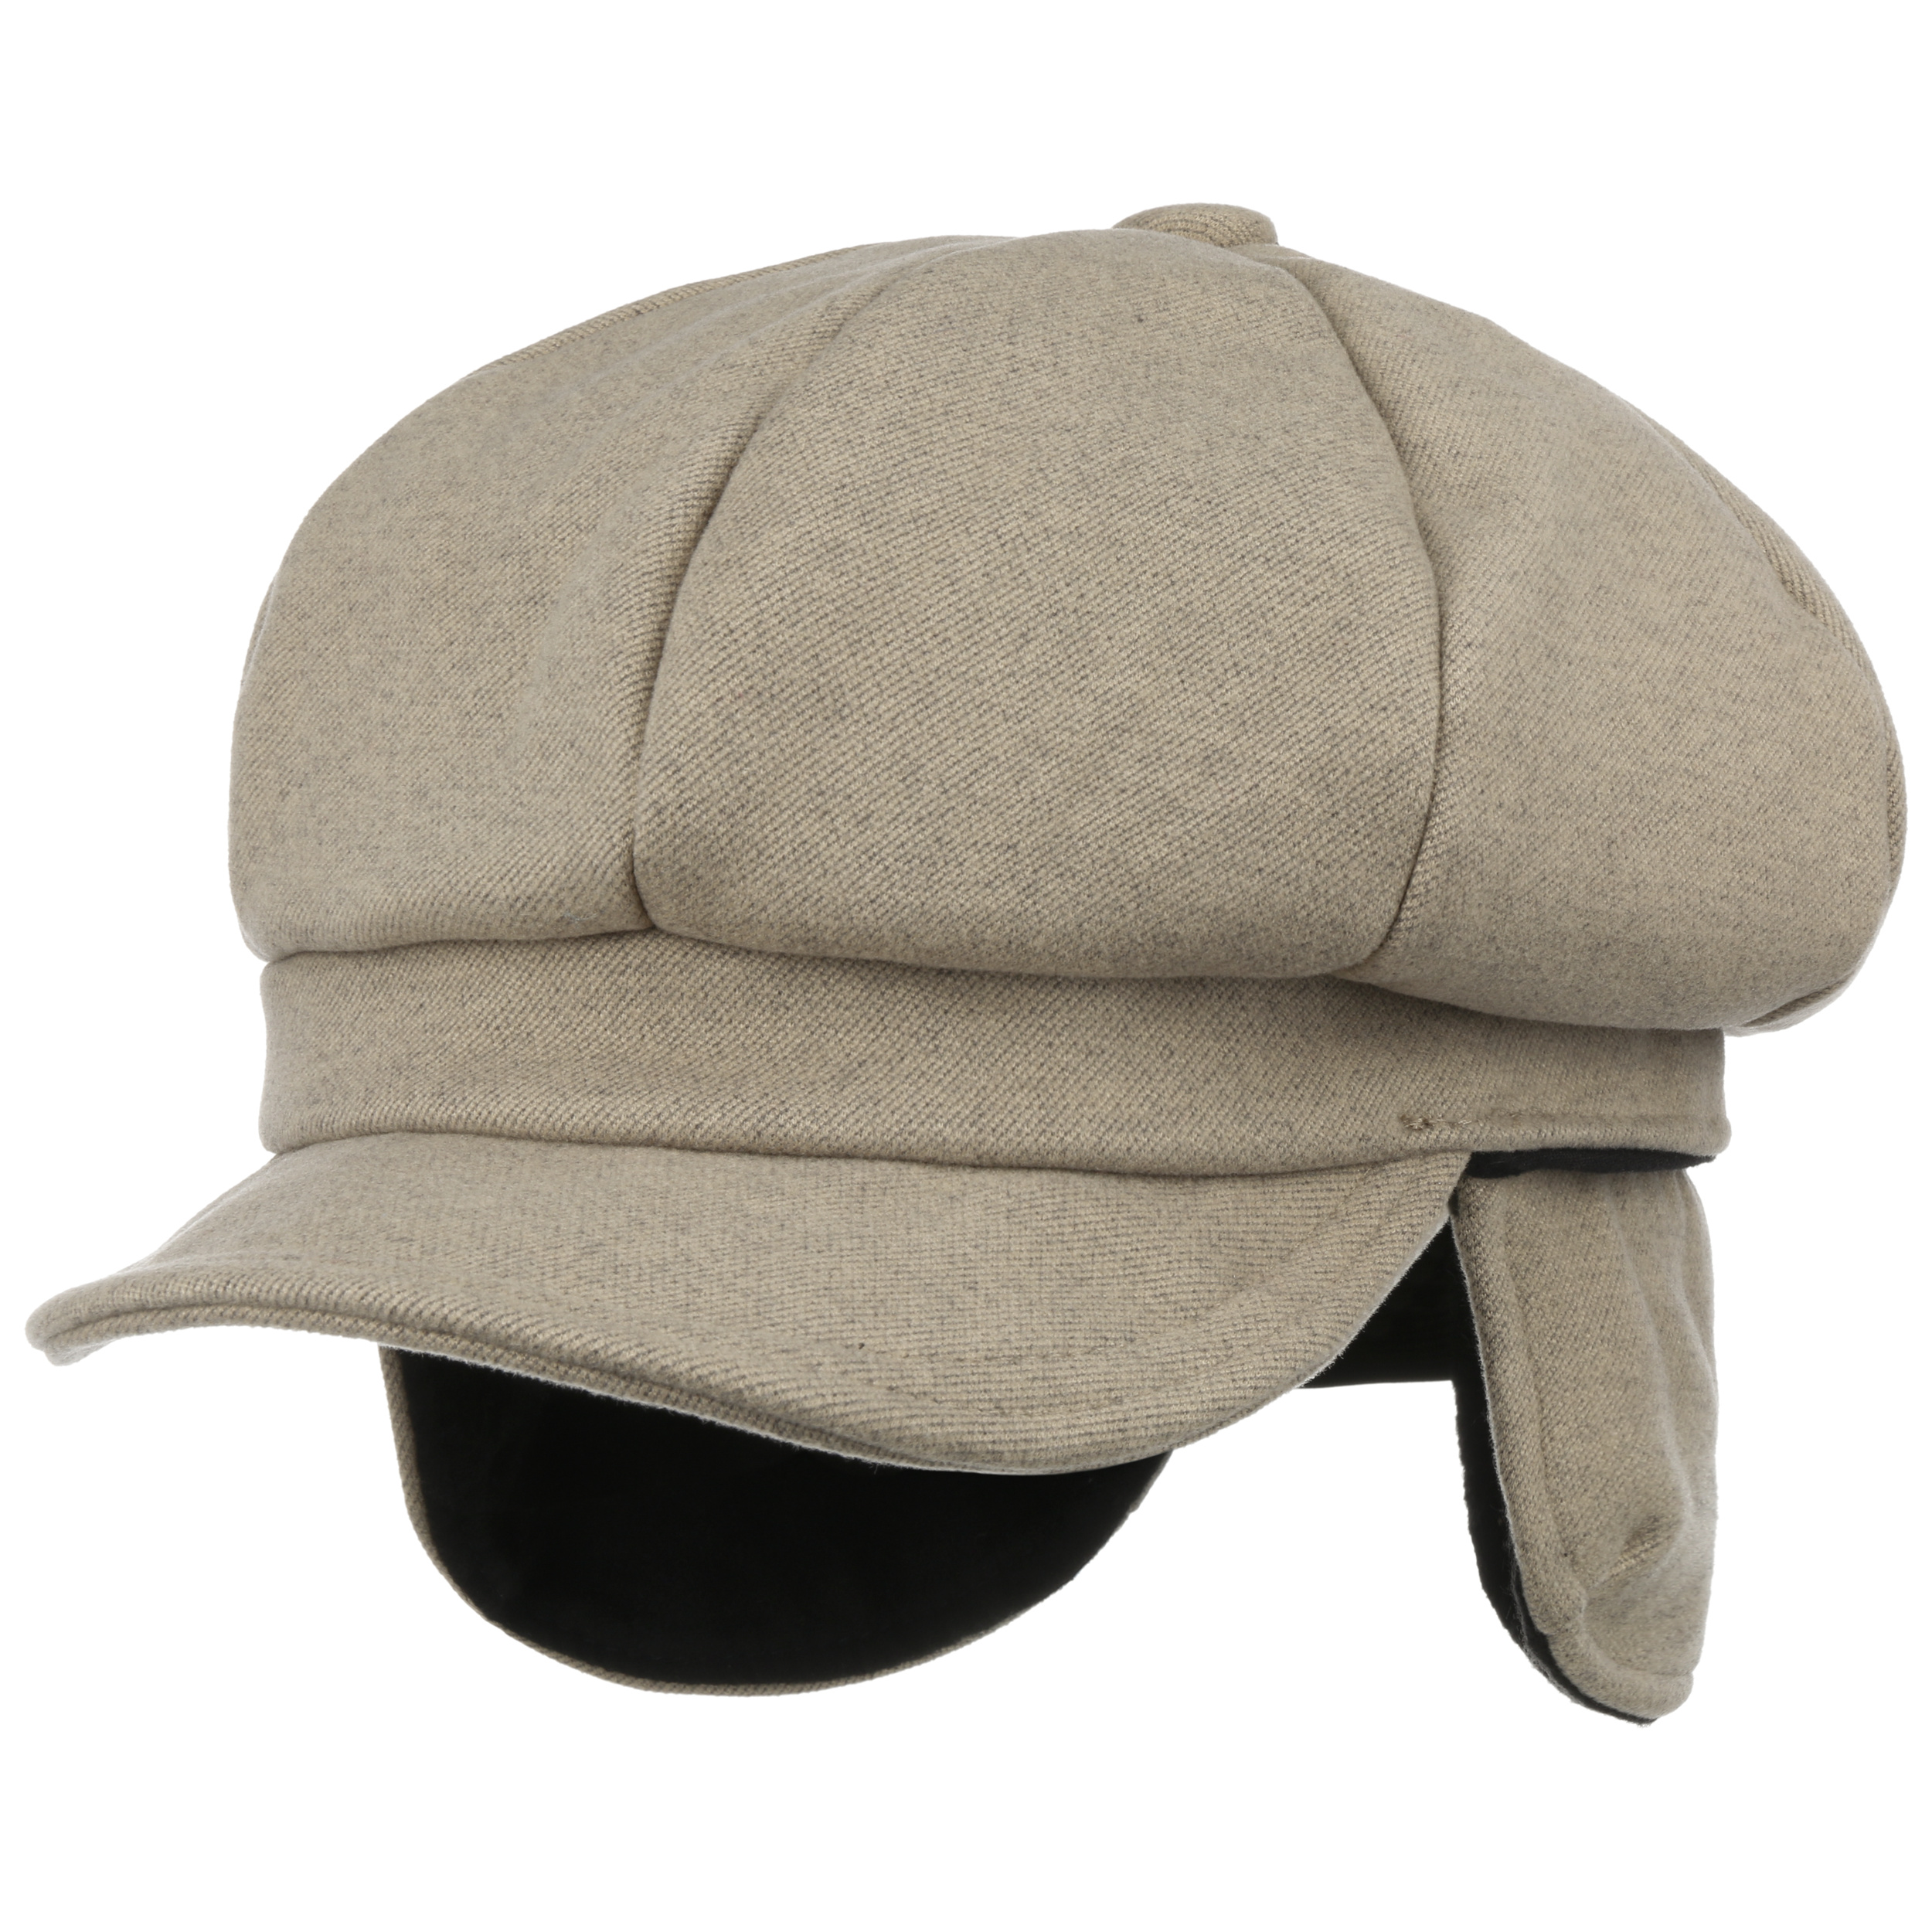 Casquette bonnet polyvalente et confortable